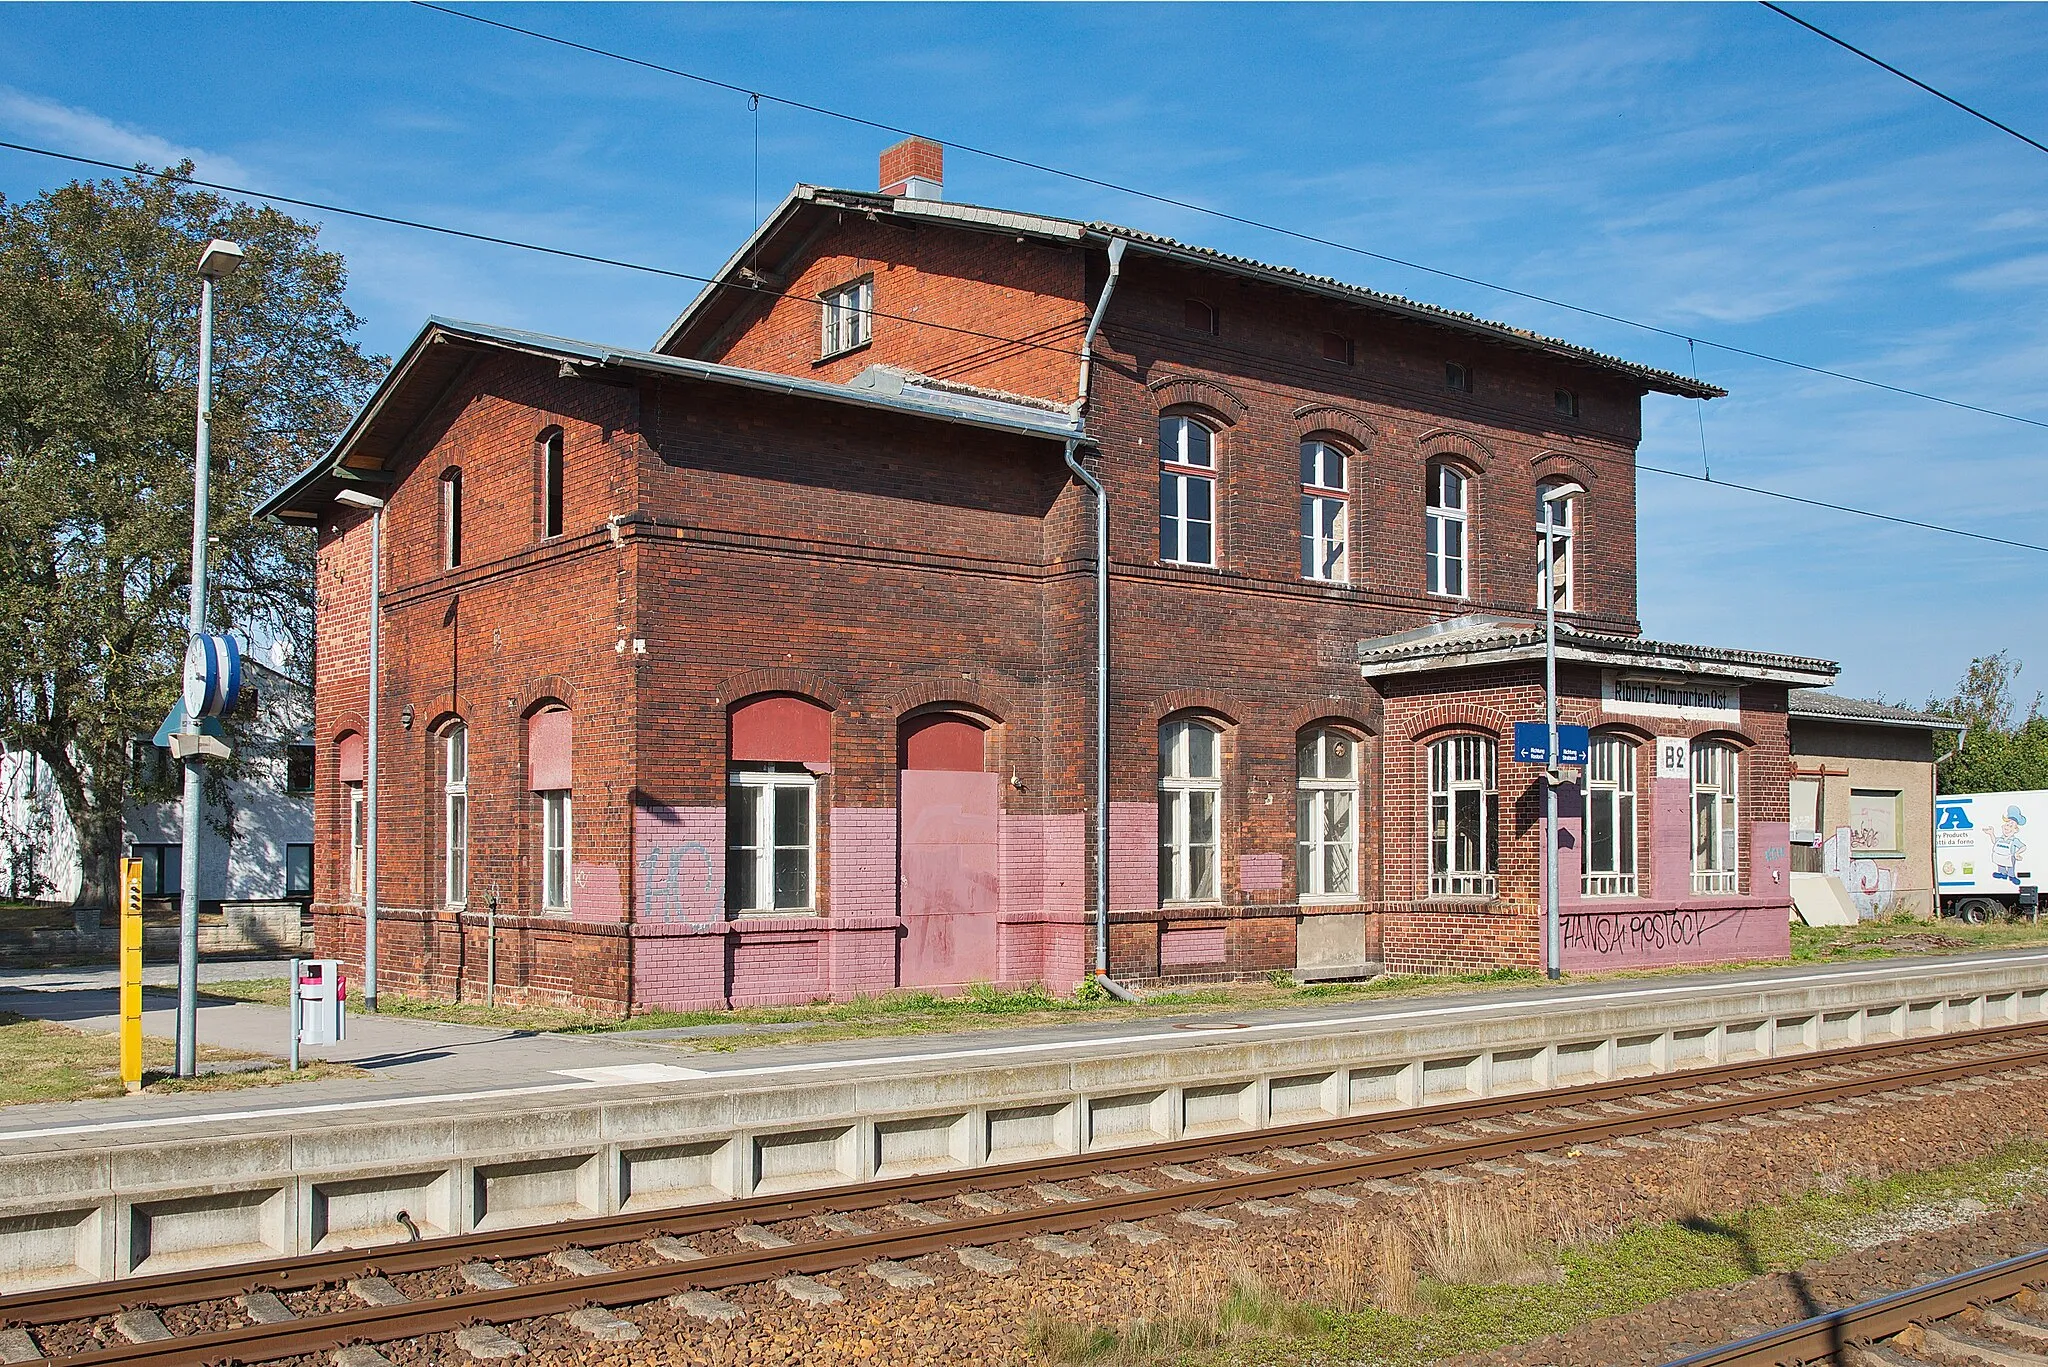 Photo showing: Blick auf das Empfangsgebäude vom Bahnhof Ribnitz-Damgarten Ost. Dieses befindet sich am 25.09.2016 in Renovierung.